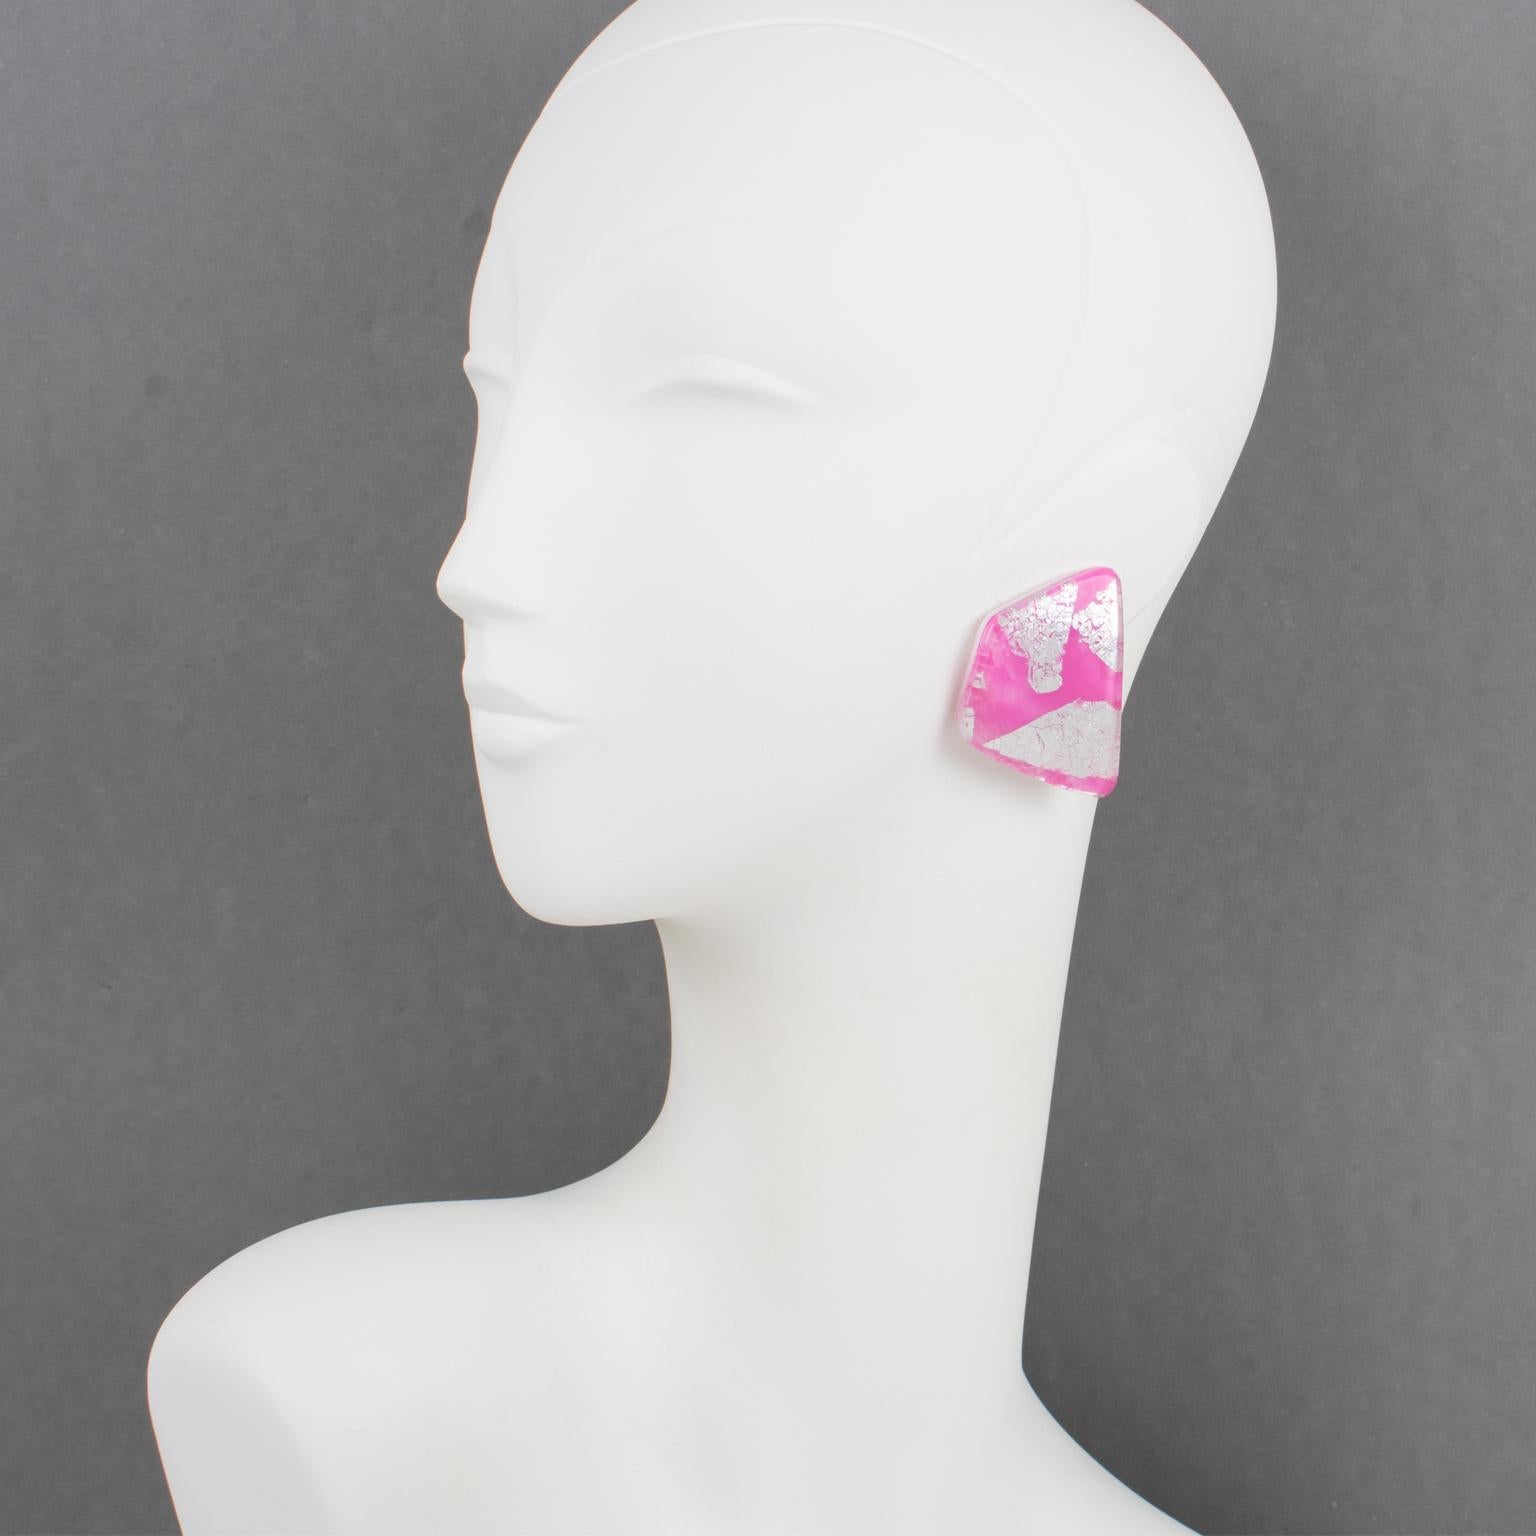 Diese atemberaubenden Ohrringe von Anne und Frank Vigneri aus Lucite zeichnen sich durch ein geschwungenes geometrisches Design aus. Die Ohrringe sind aus mehrlagigem Lucite gefertigt, mit weißem Hintergrund und rosafarbenem Lucite mit eingebetteten